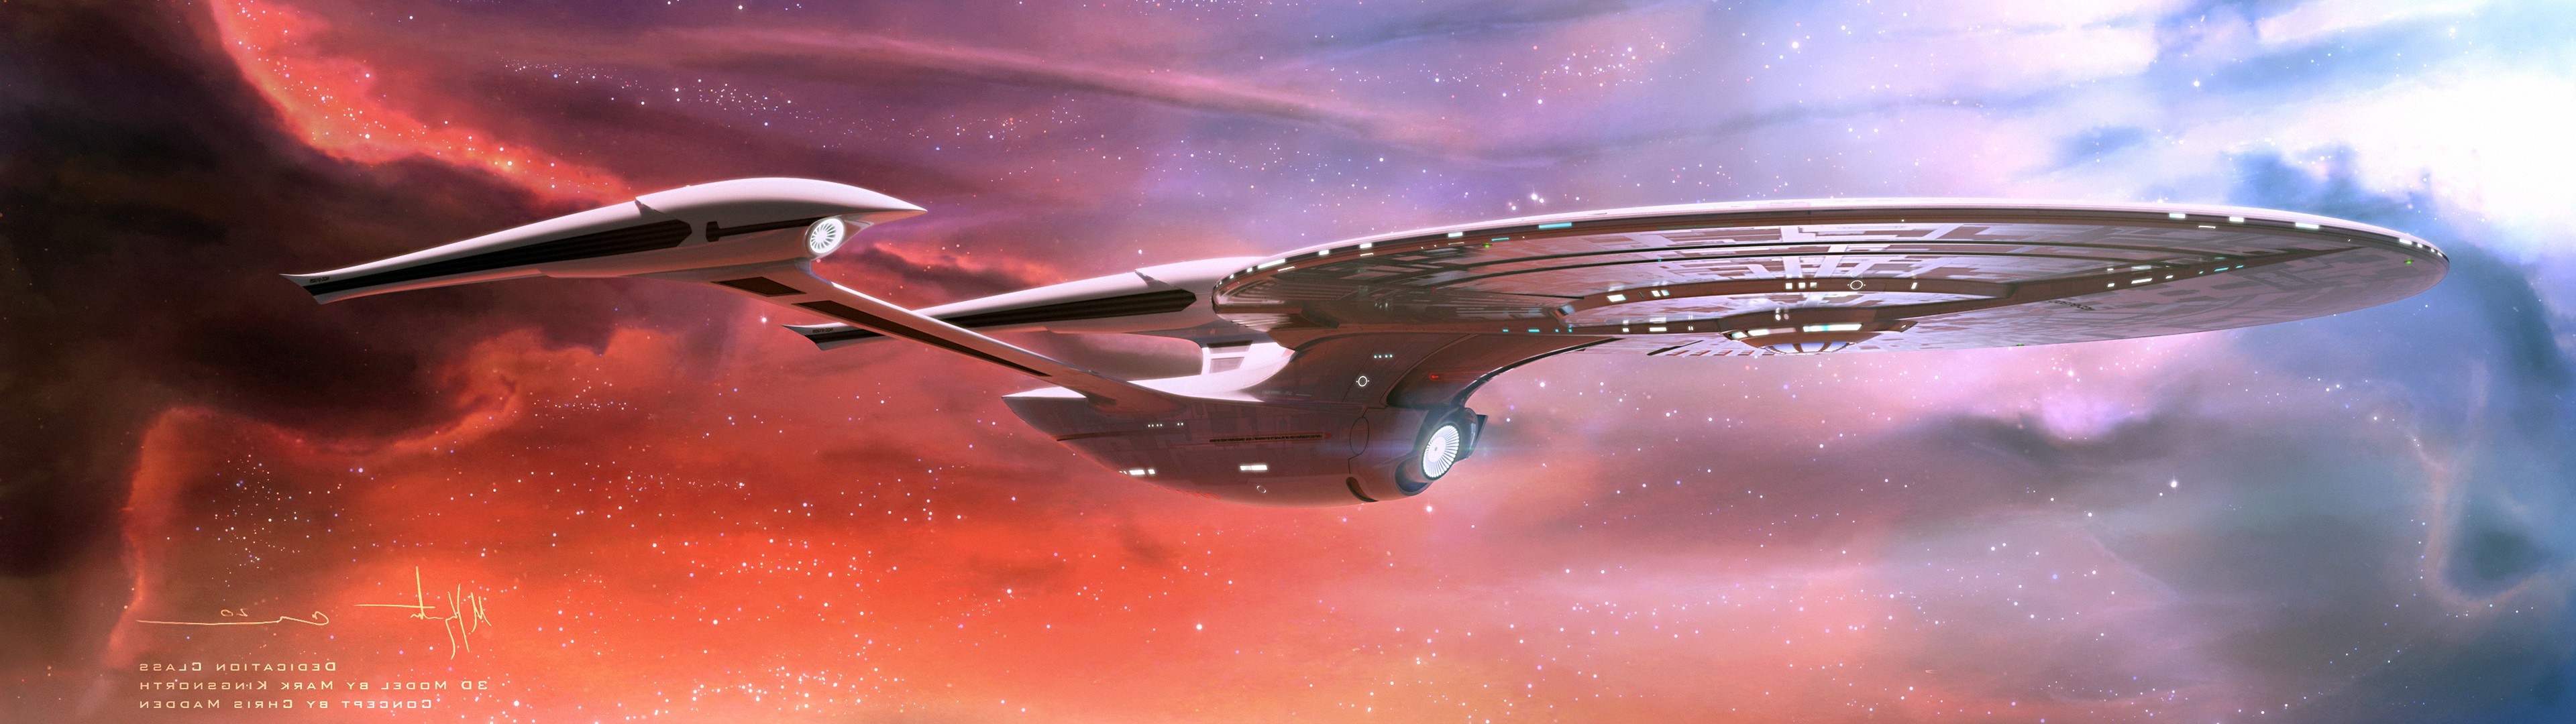 Star Trek, USS Enterprise (spaceship), Space, Nebula, Multiple Display ...